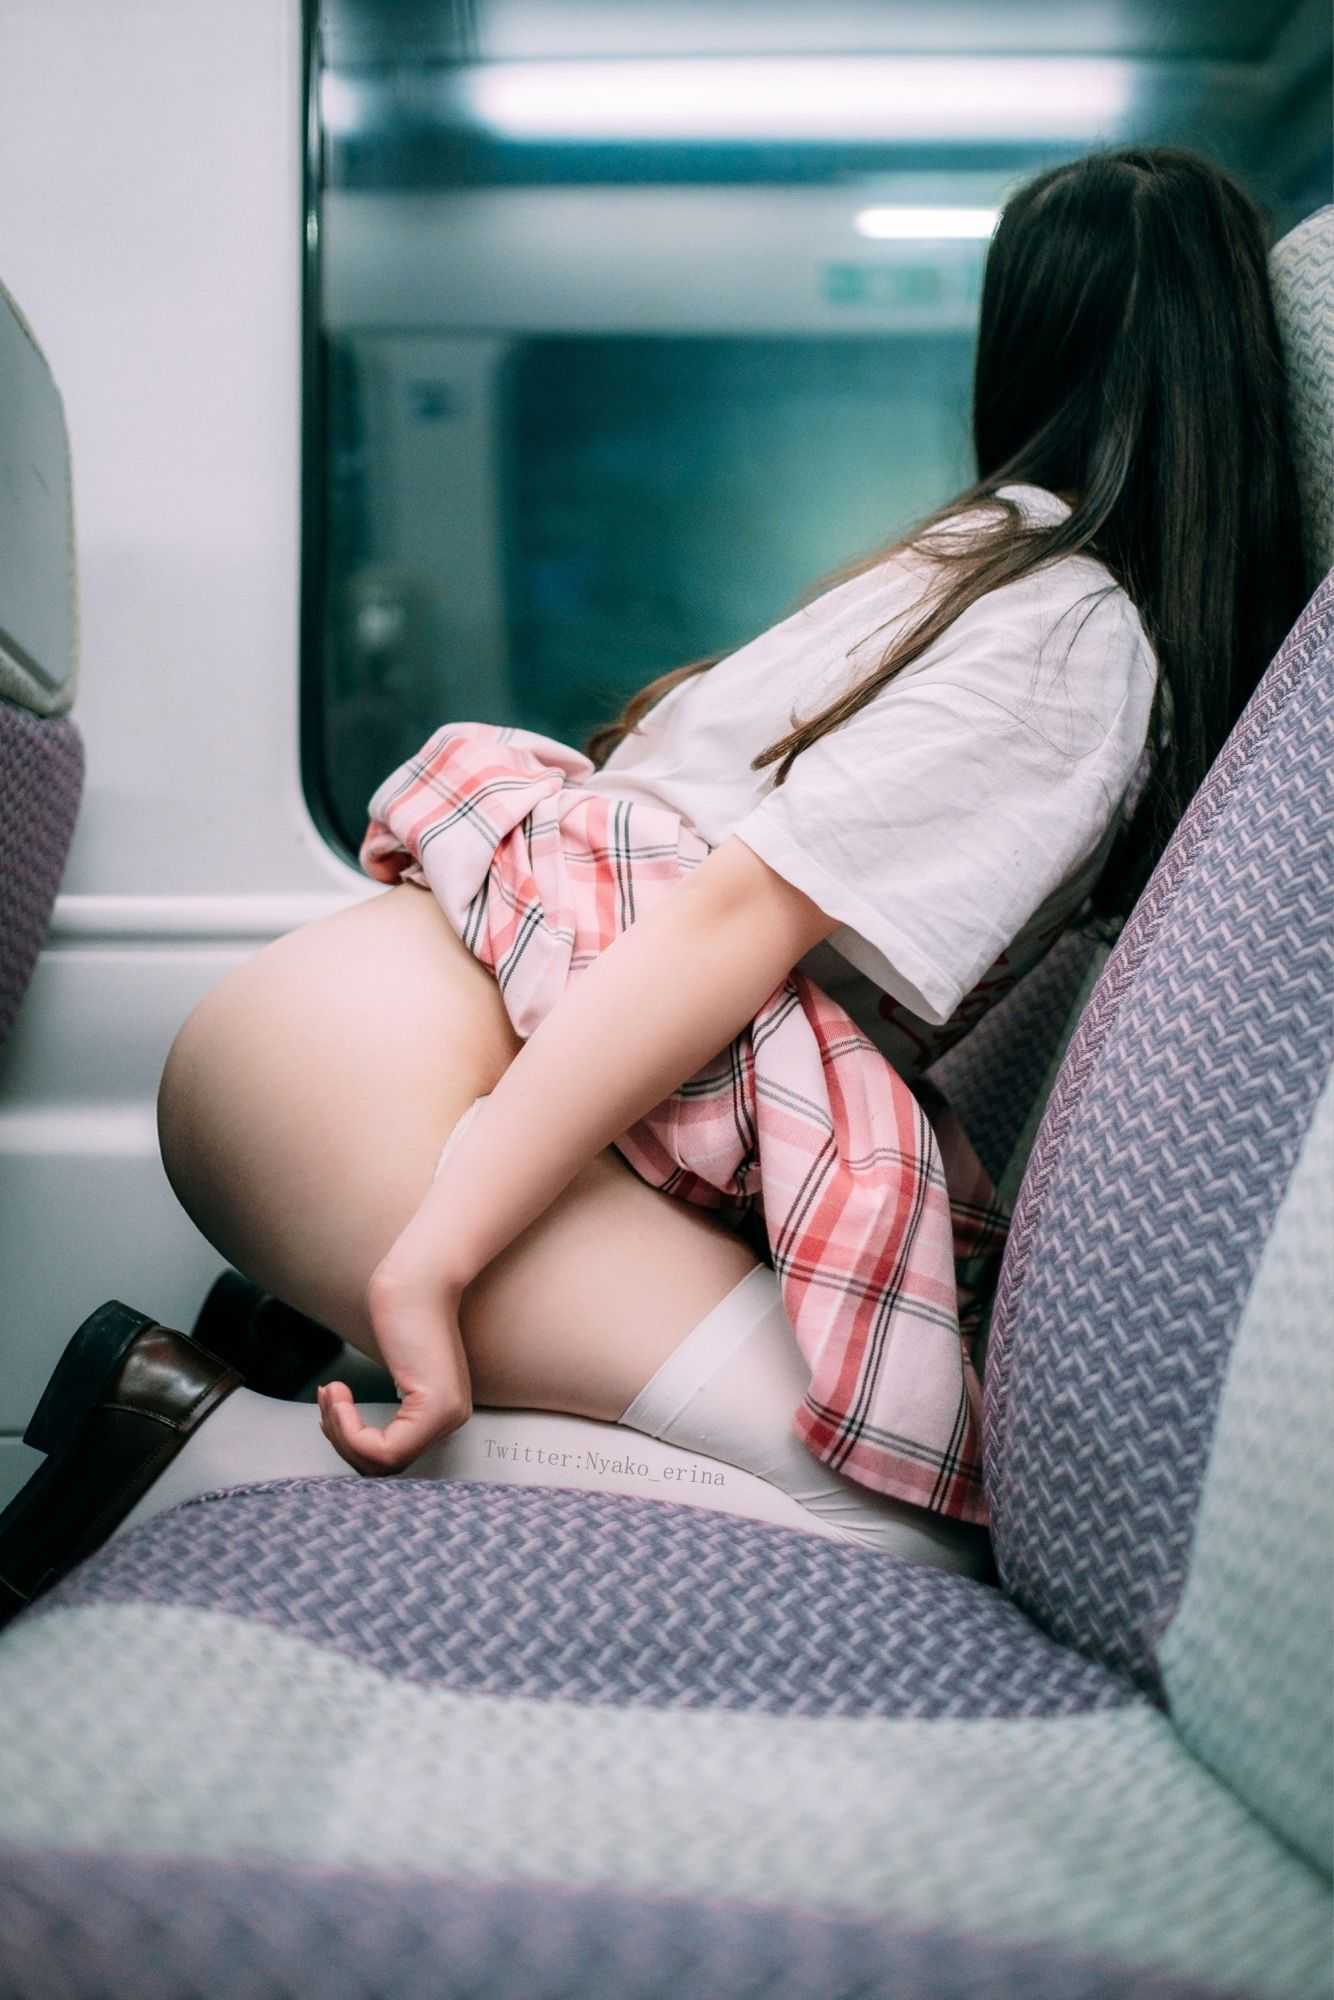 [有喵酱] School girl in HK Train - (17P) - Sexy asian pics gallery